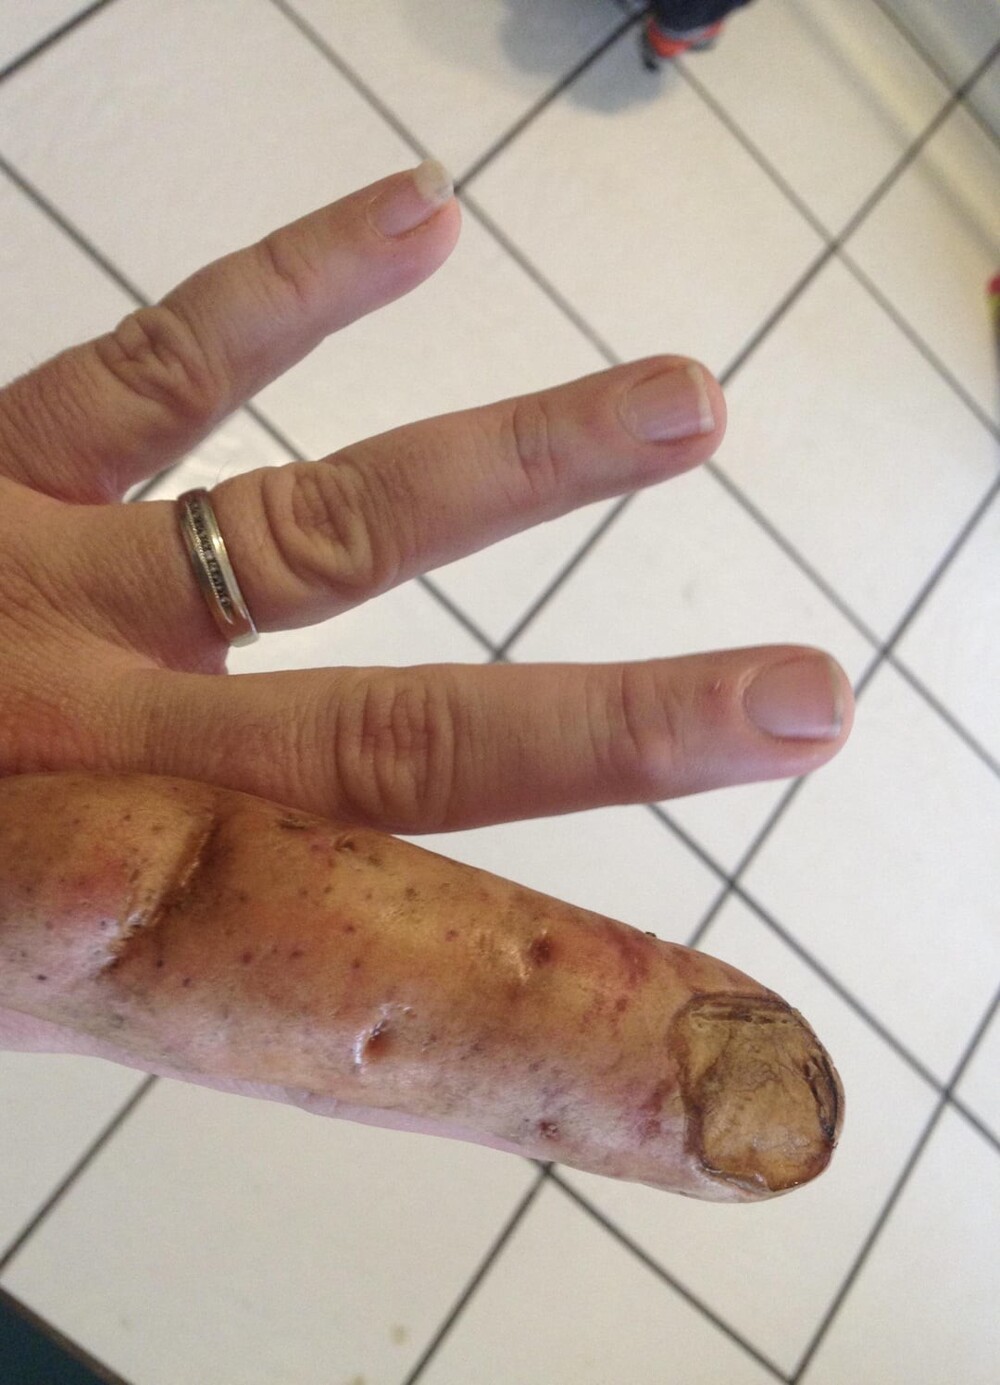 5. Картофель, который очень похож на палец